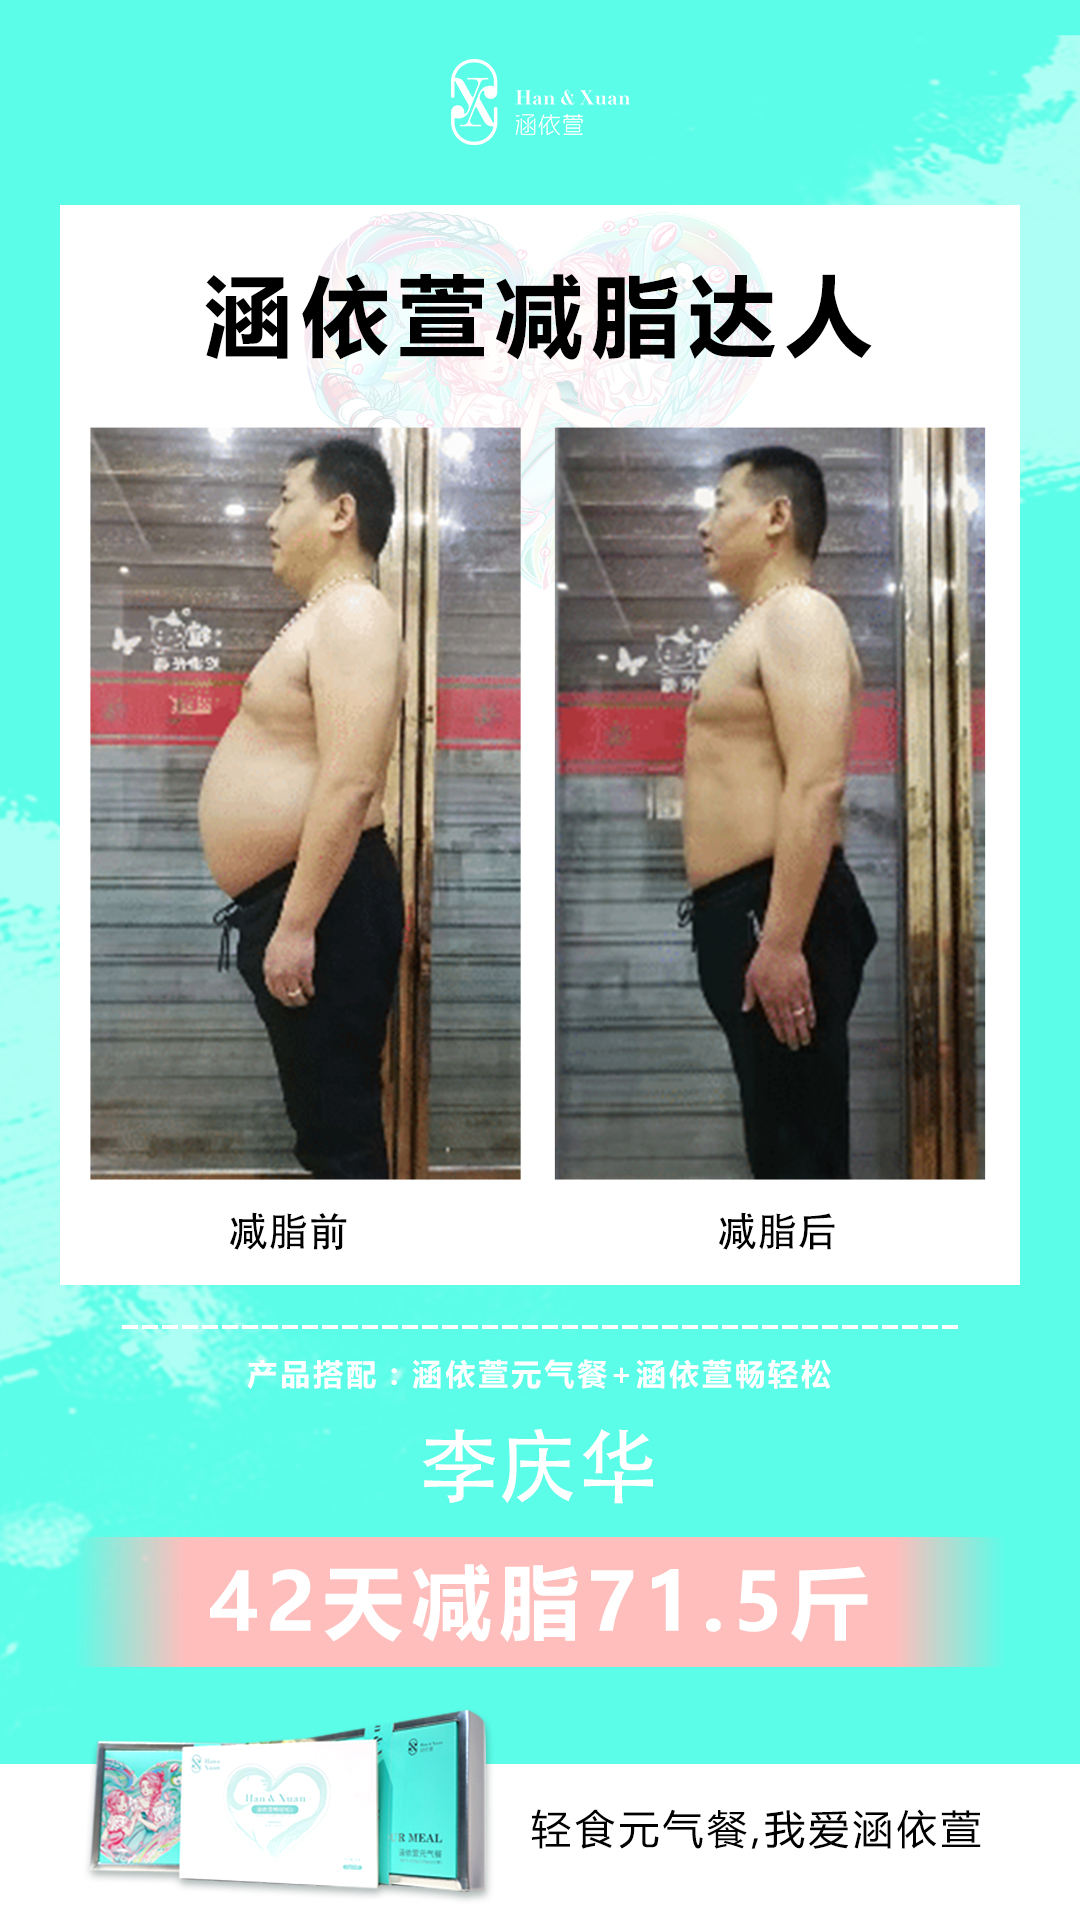 李庆华 使用涵依萱元气餐42天减脂71.5斤